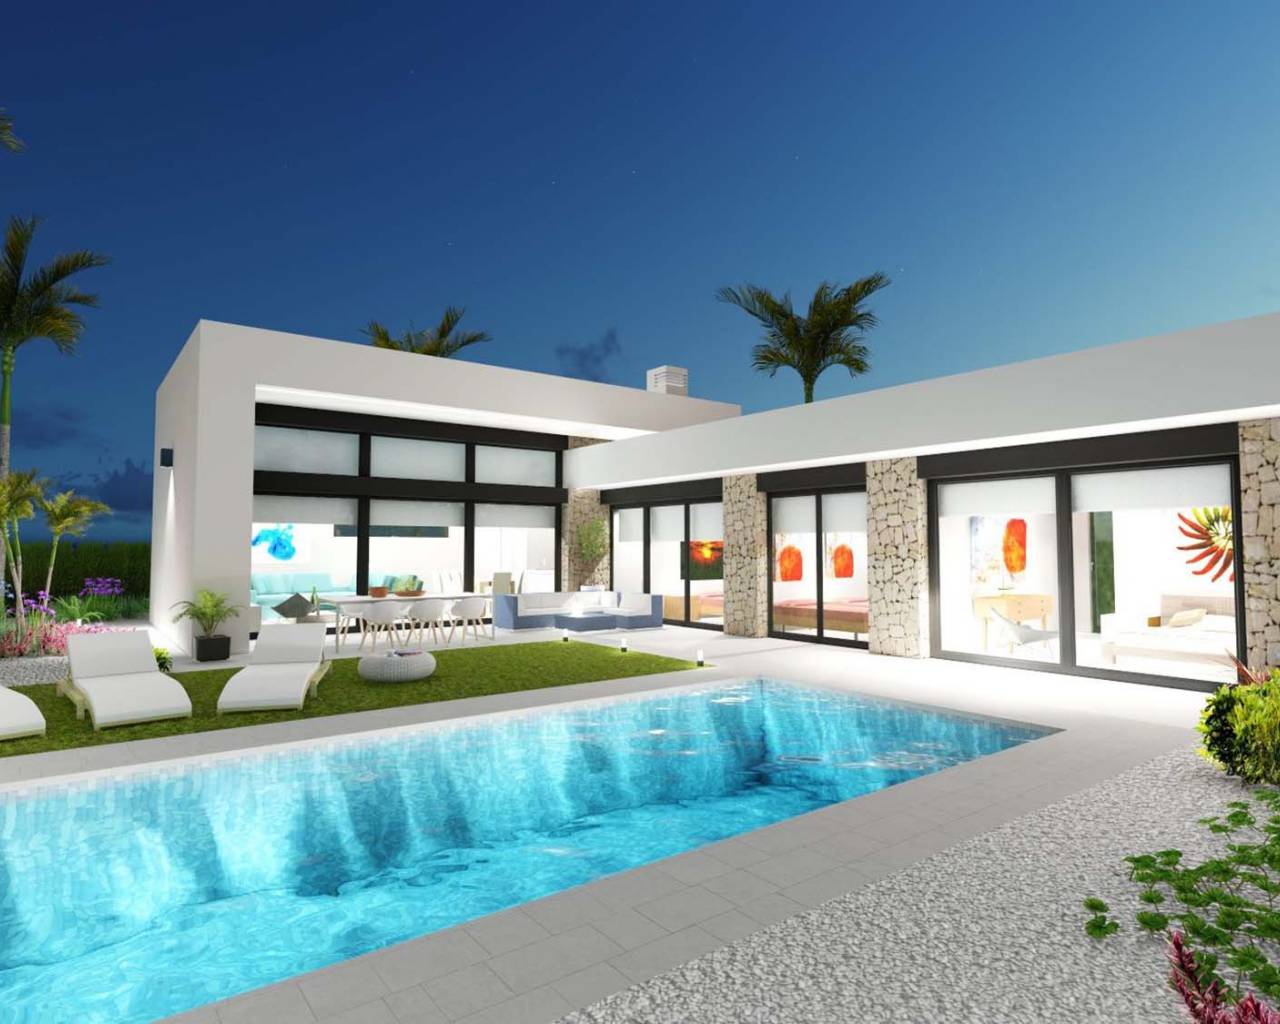 Freistehende Villa mit Pool zu verkaufen in Calasparra, Murcia, Spanien